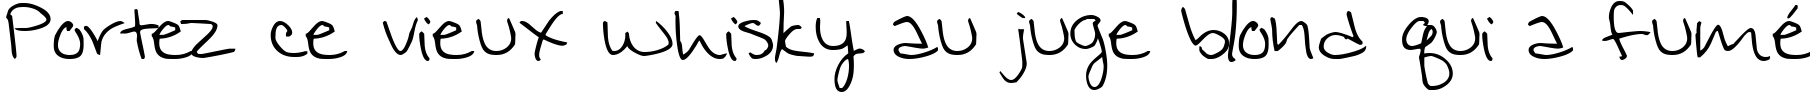 Пример написания шрифтом Jennifer's Hand Writing текста на французском